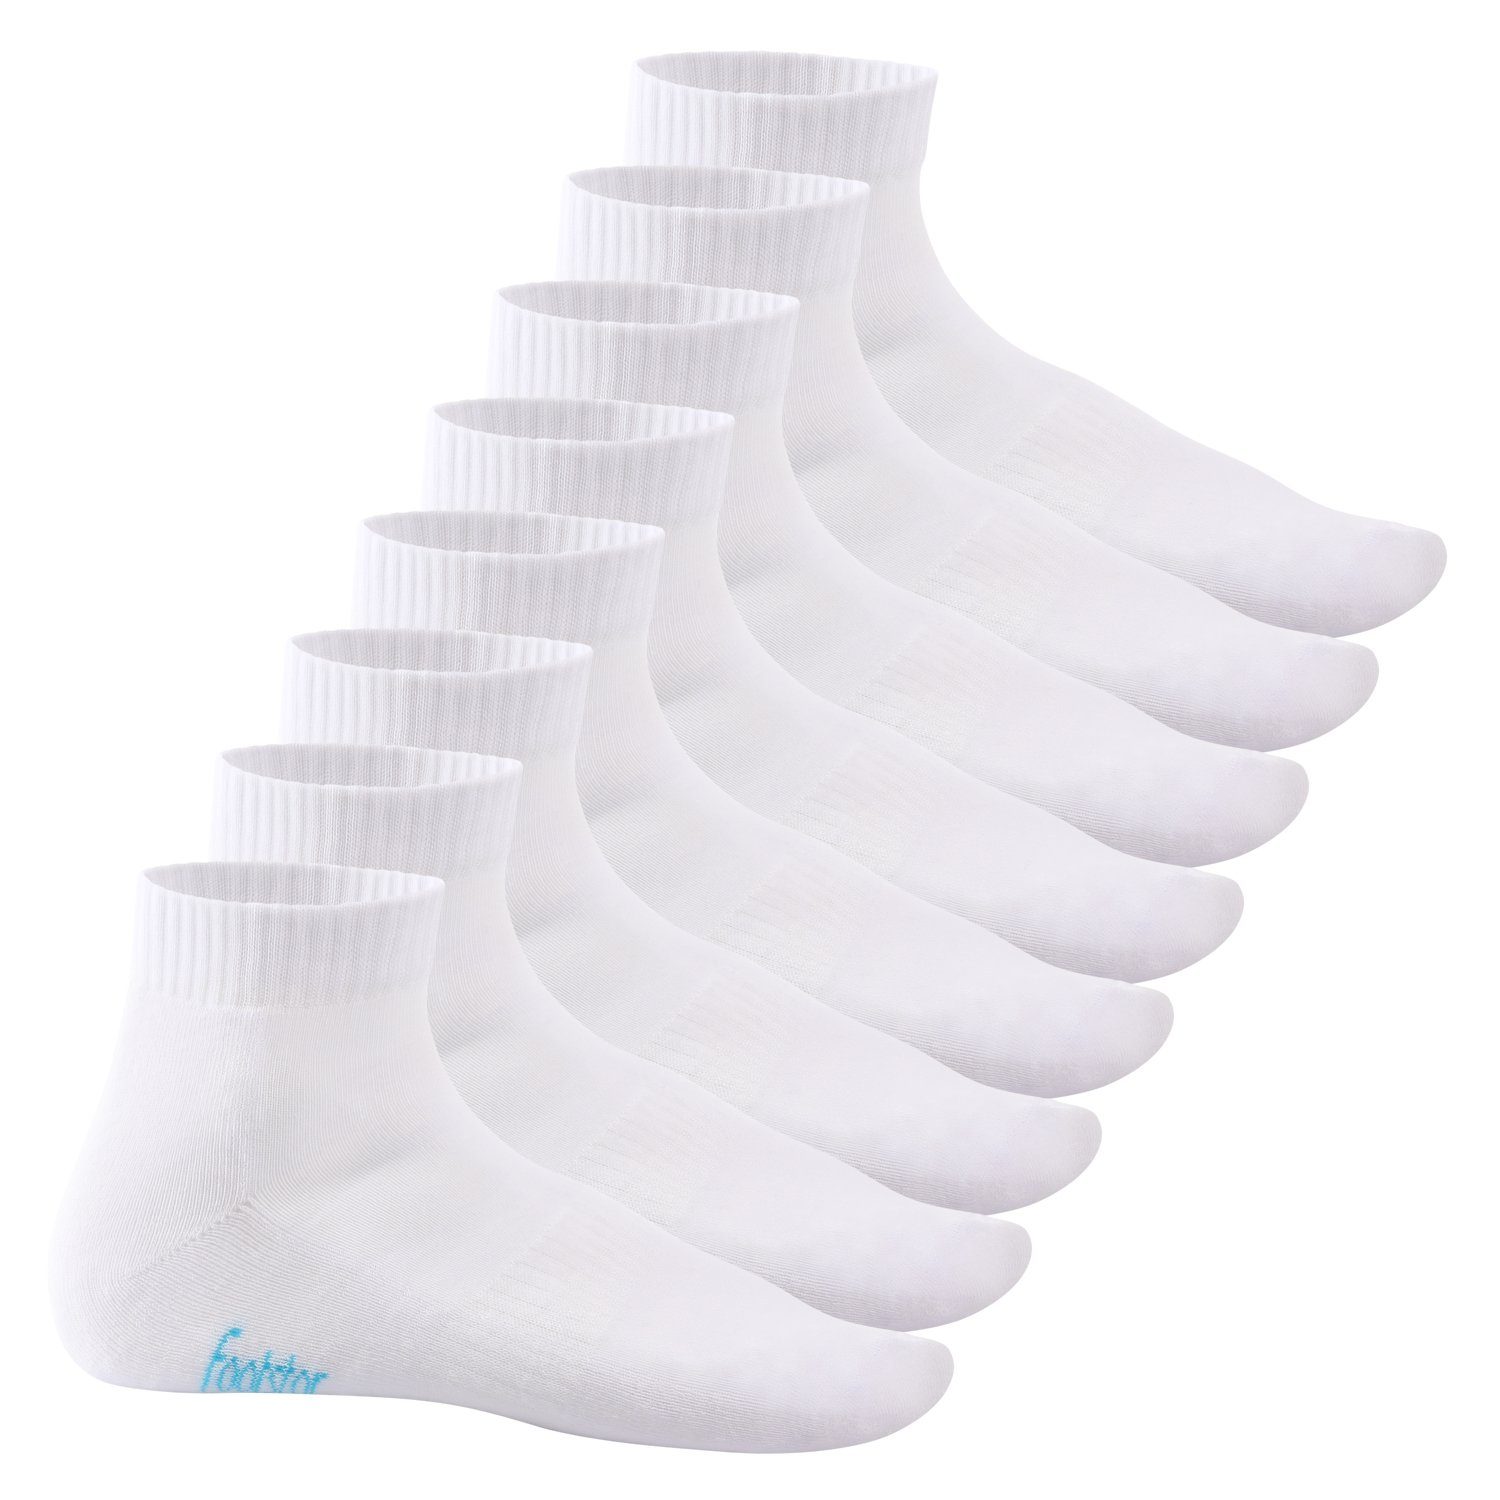 Footstar Kurzsocken Damen & Herren Kurzschaft Socken, Frottee-Sohle (8 Paar) Weiß